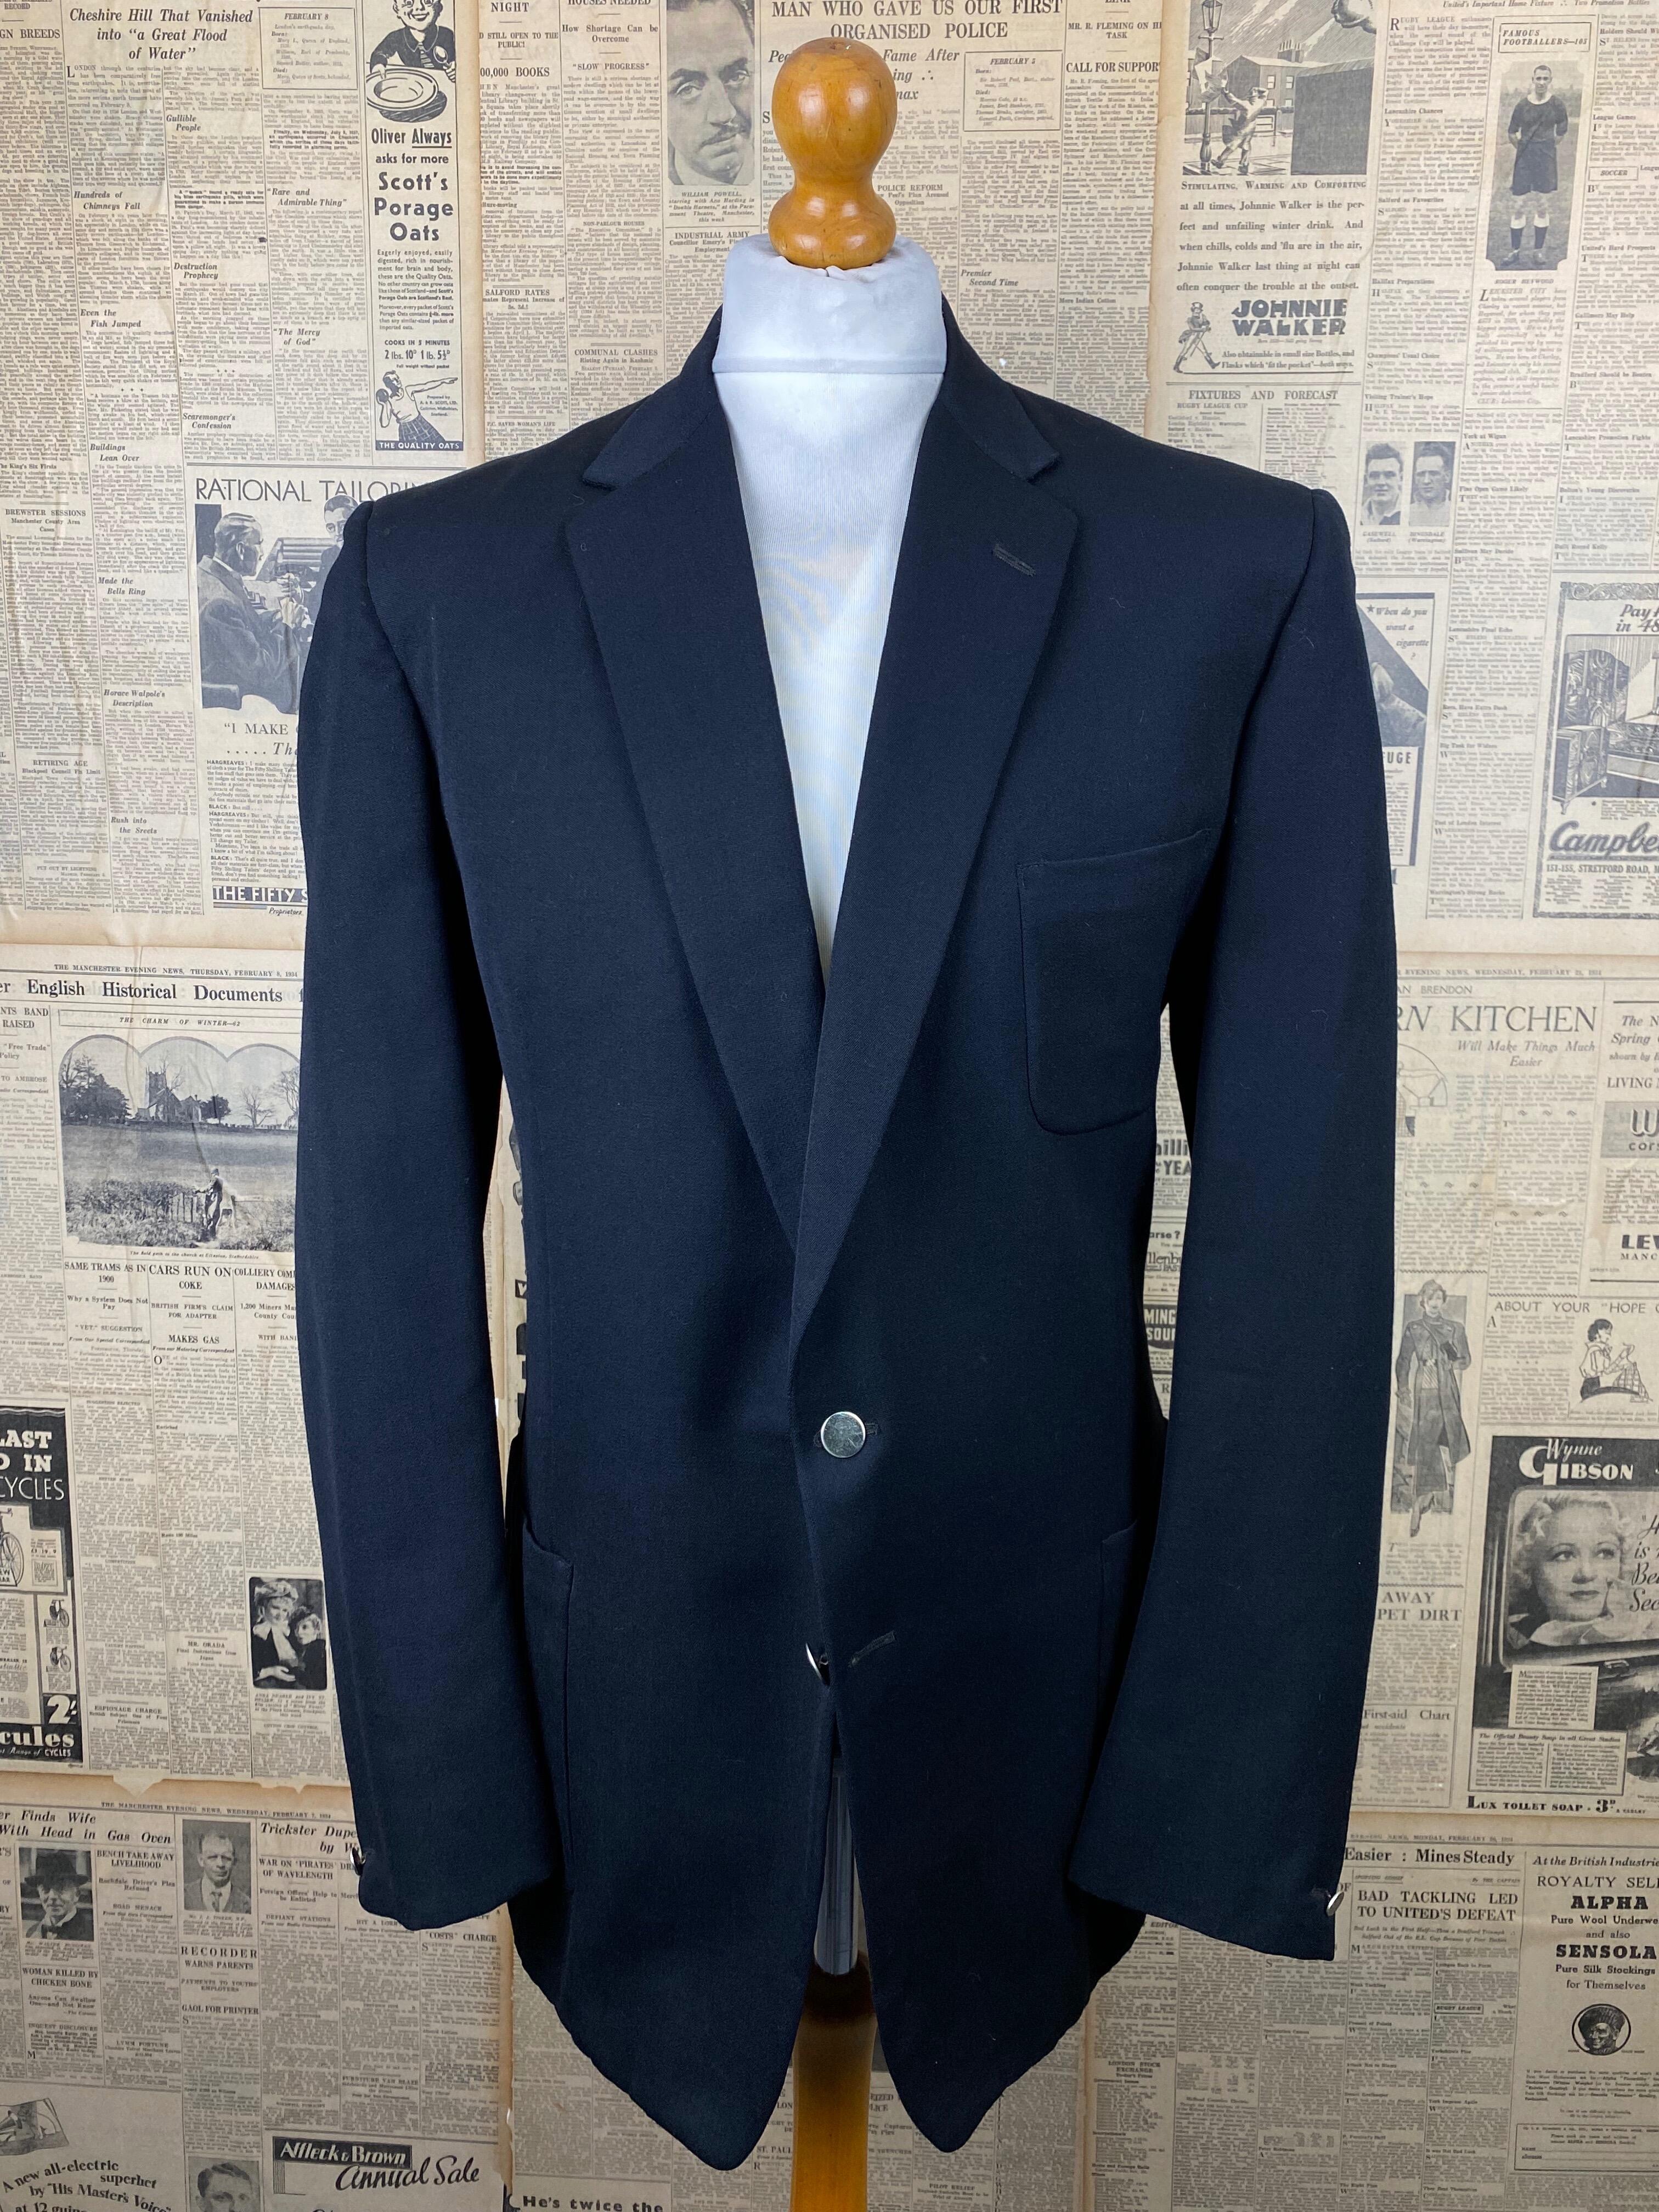 Vintage 1950's black patch pocket blazer size 44 extra long